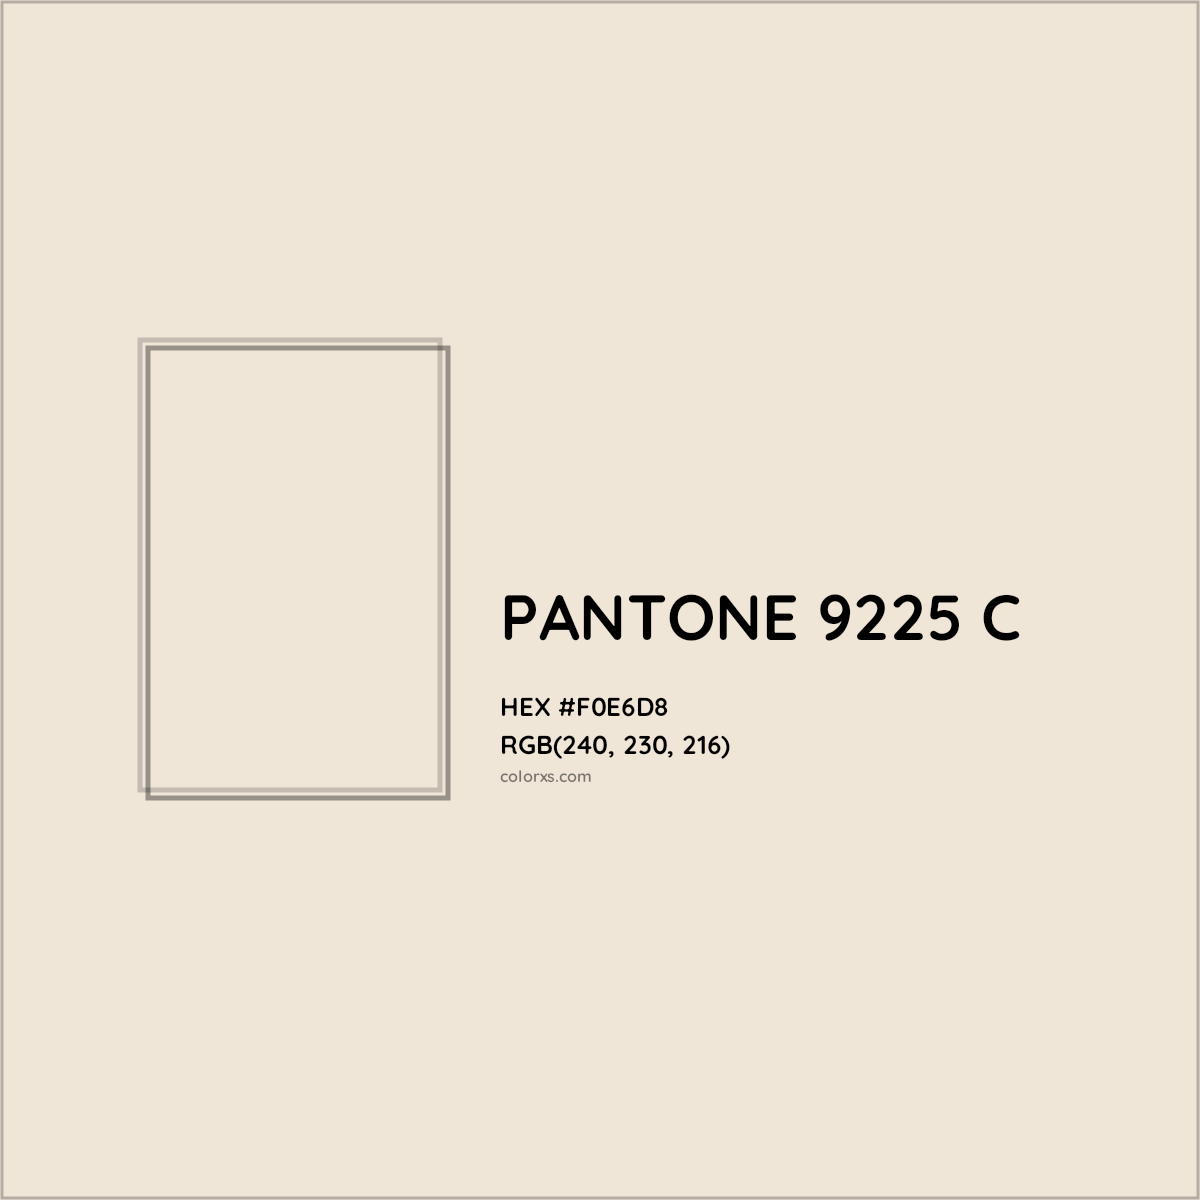 HEX #F0E6D8 PANTONE 9225 C CMS Pantone PMS - Color Code